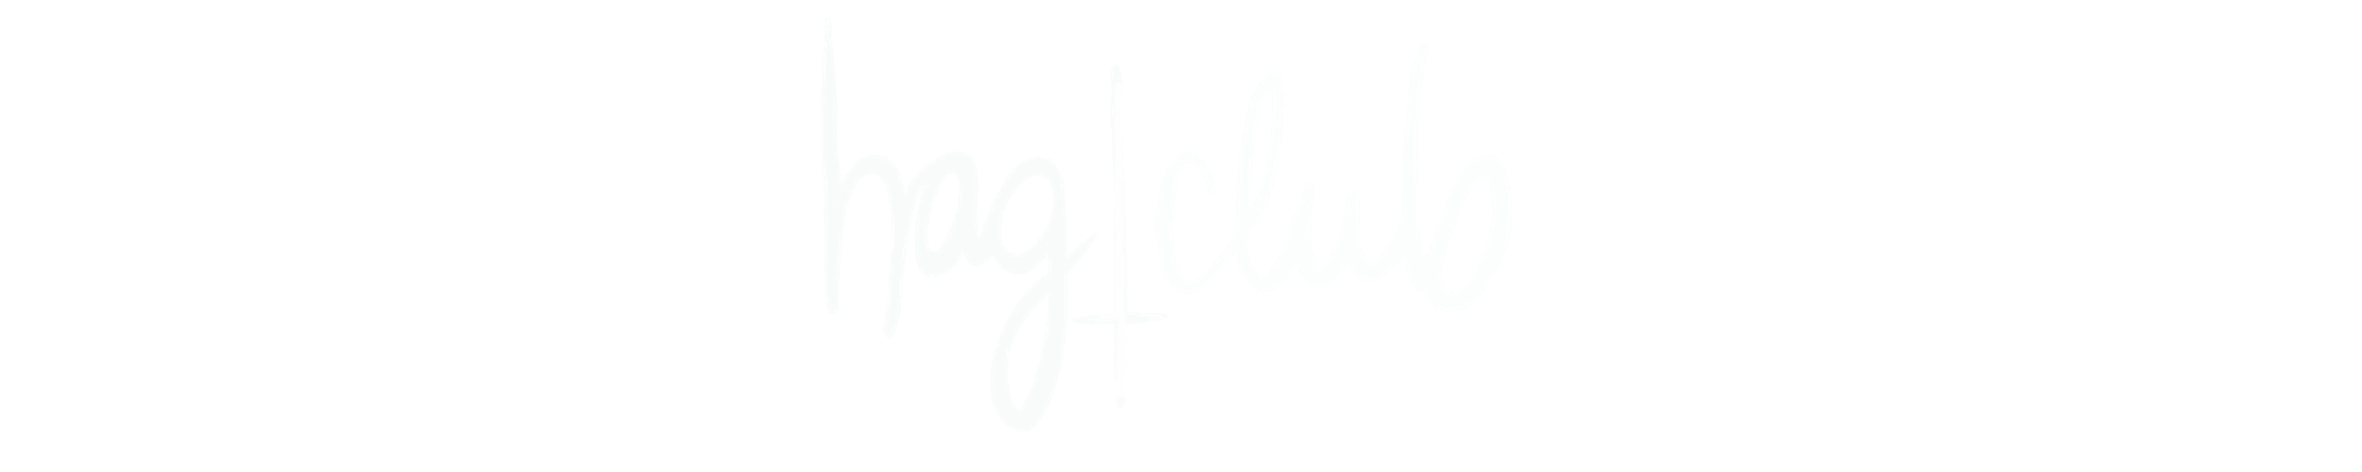 Hag Club